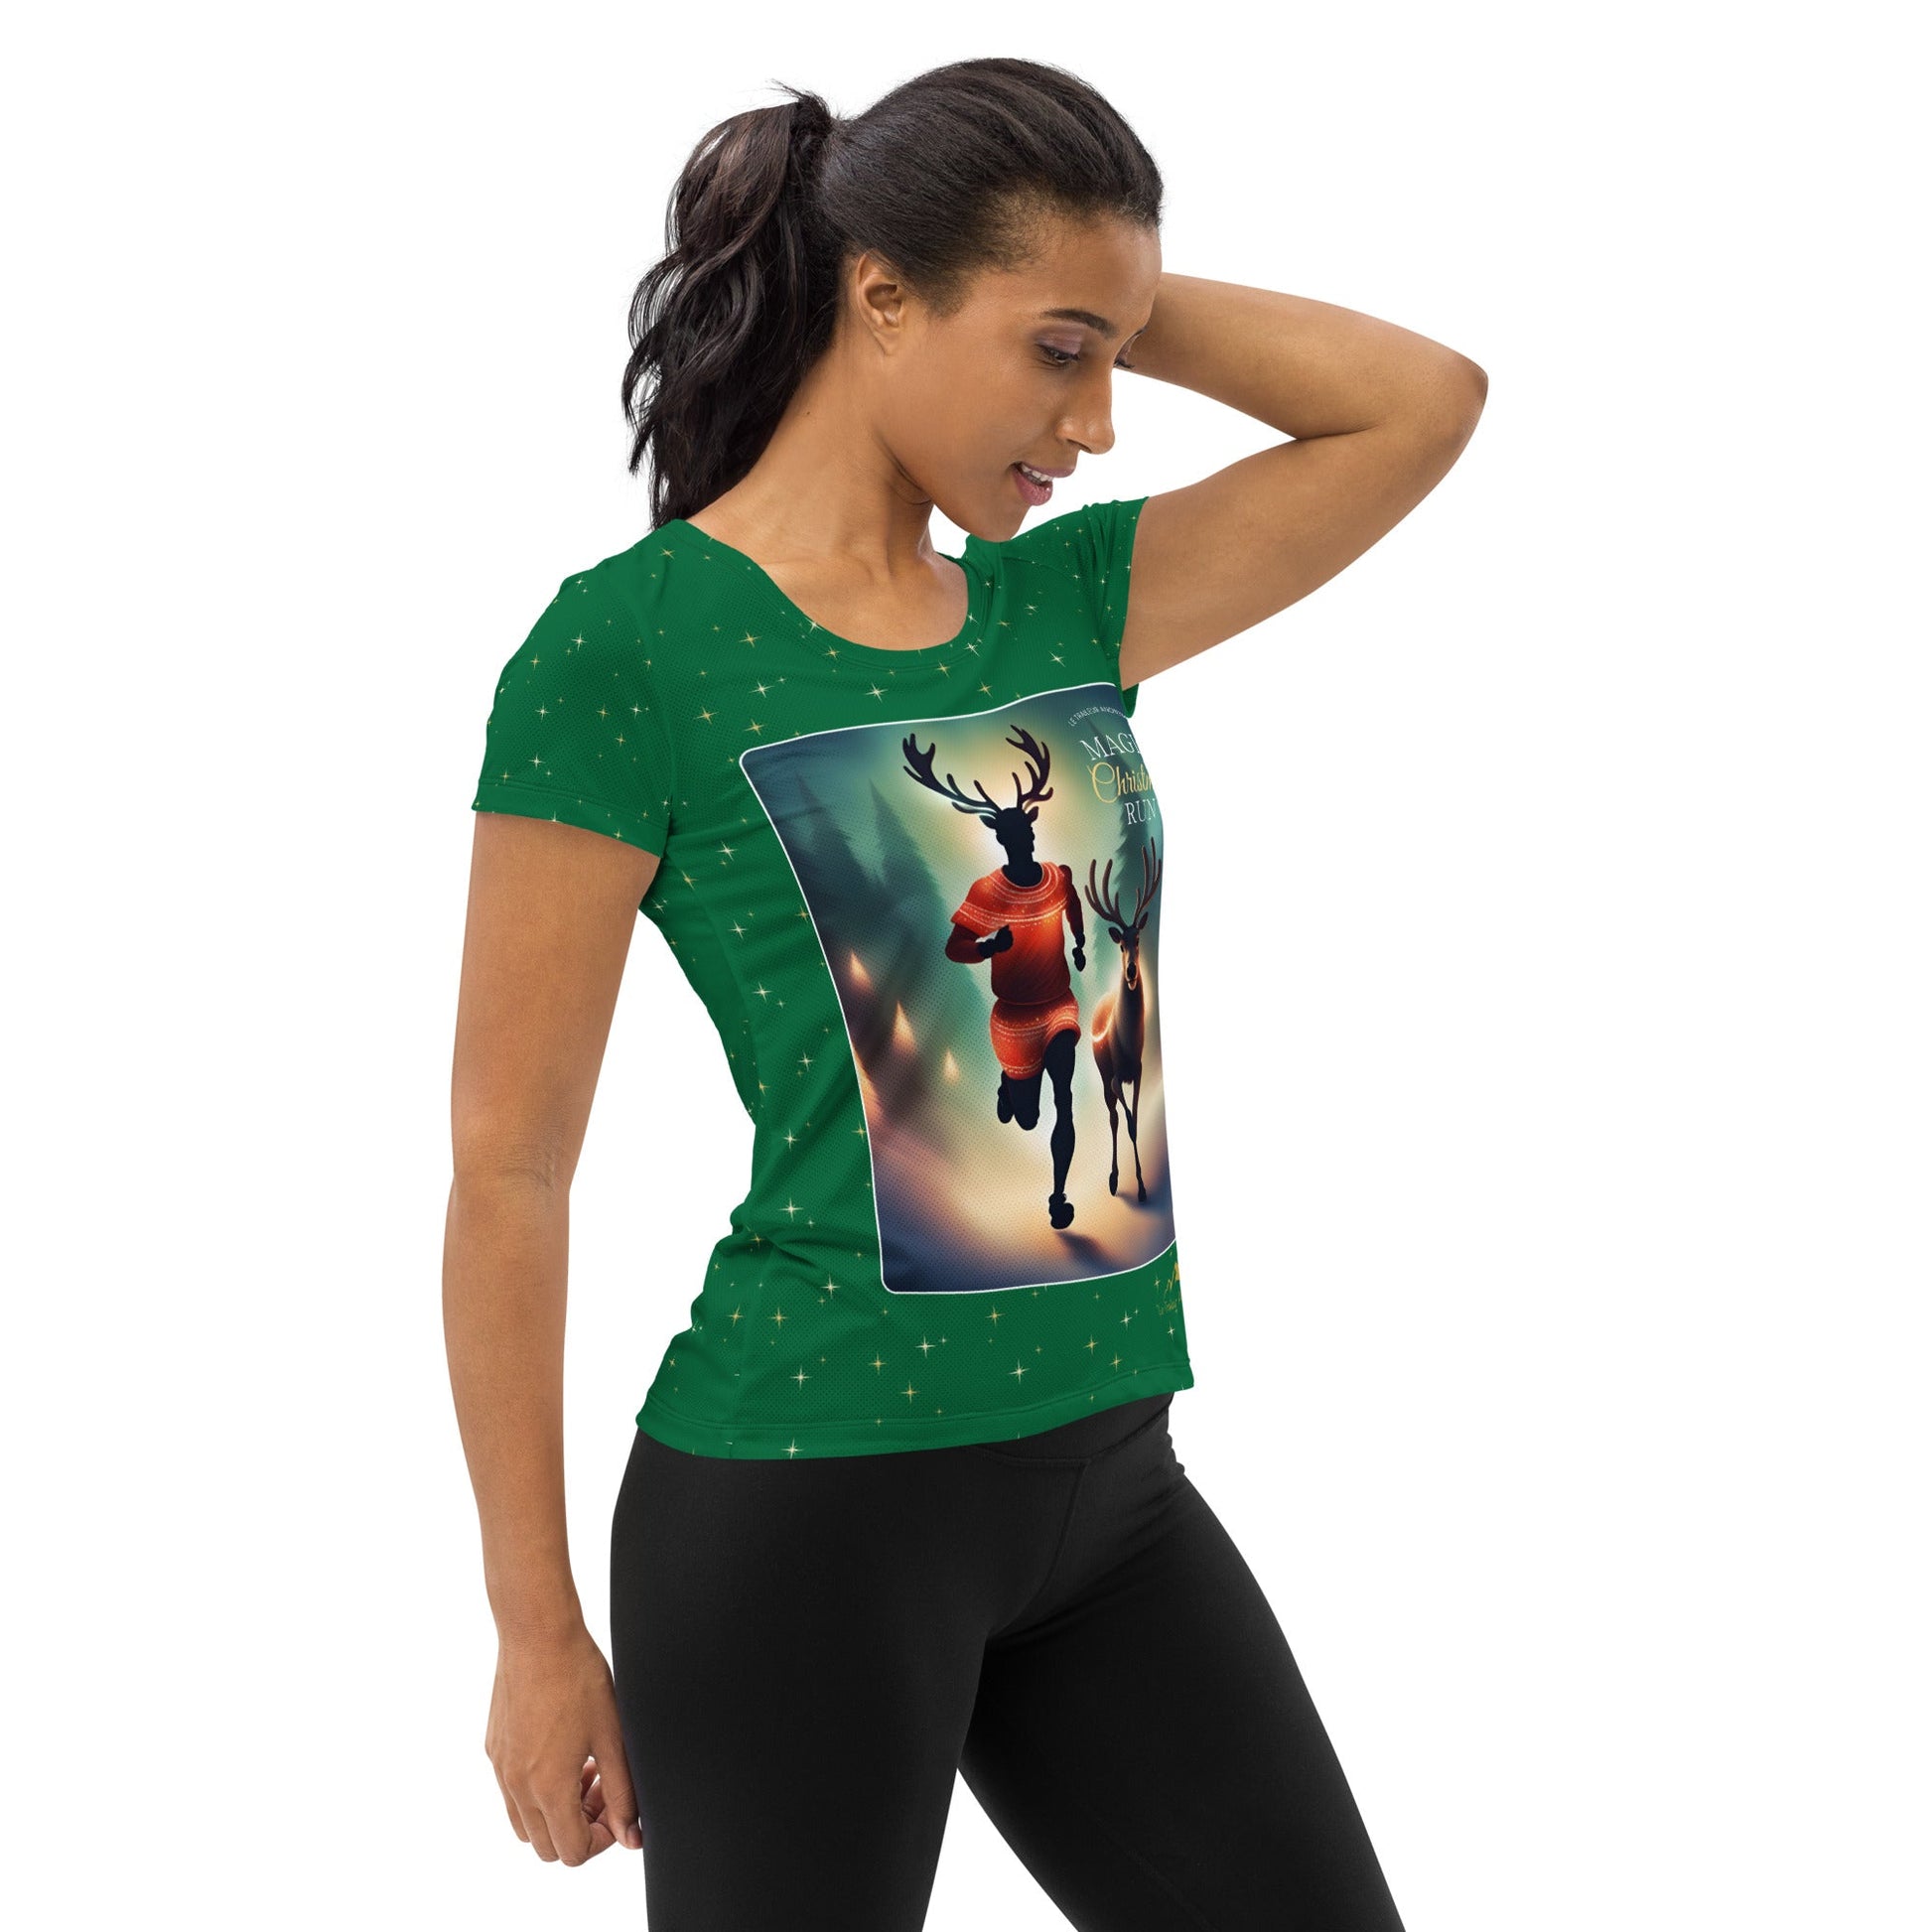 T-Shirt Running - Femme - Christmas Run - Green - Le Traileur Anonyme